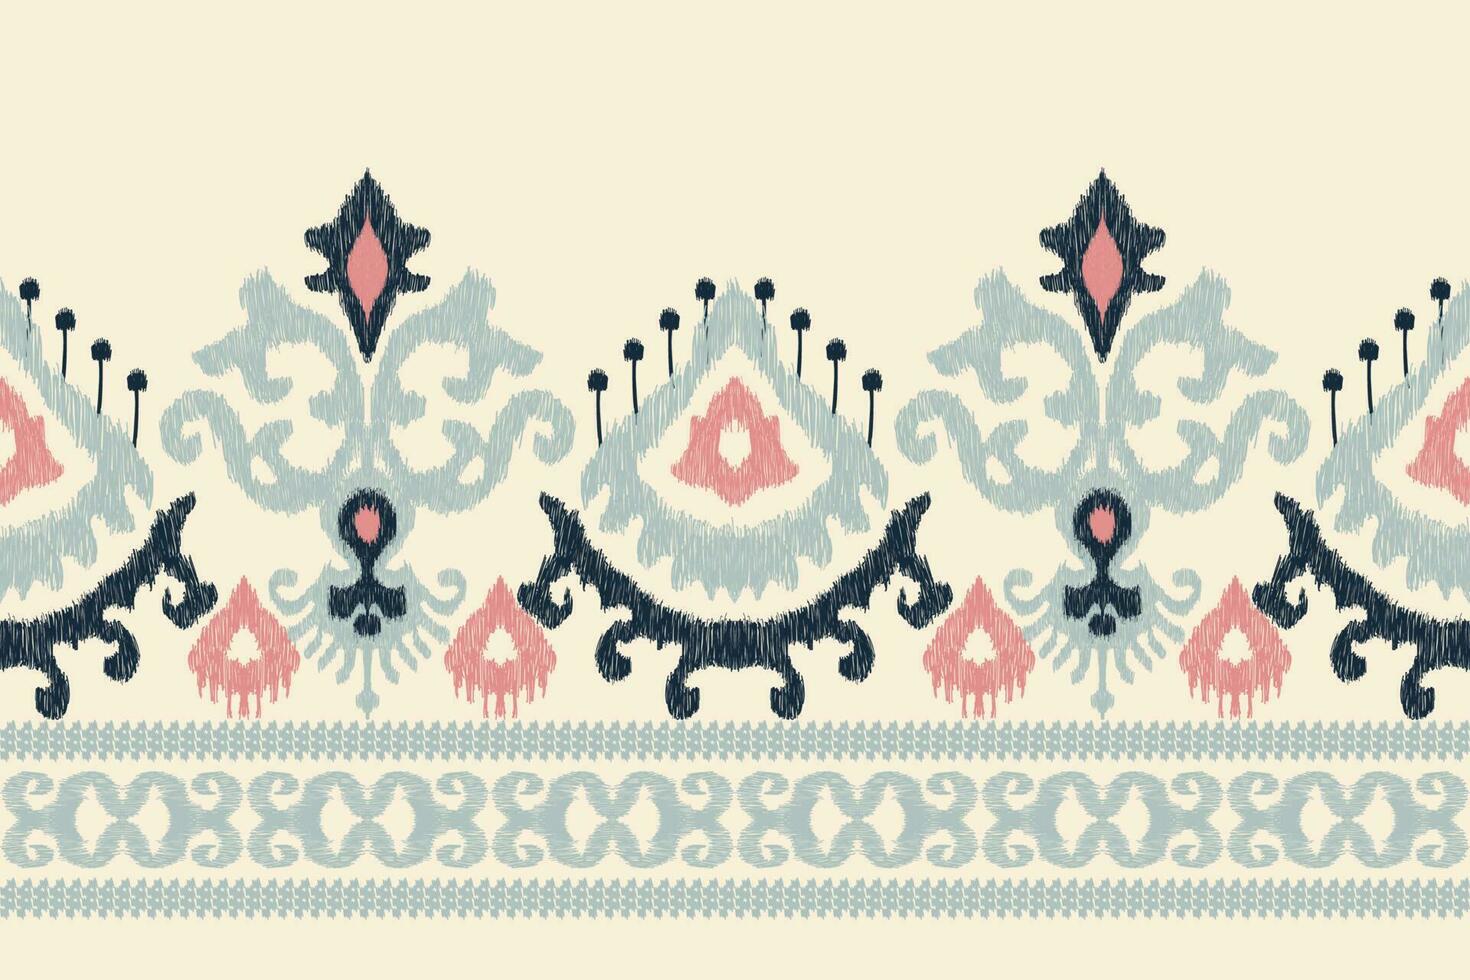 ikat blommig paisley broderi på vit bakgrund.ikat etnisk orientalisk mönster traditionell.aztec stil abstrakt vektor illustration.design för textur, tyg, kläder, inslagning, dekoration, sarong, tryck